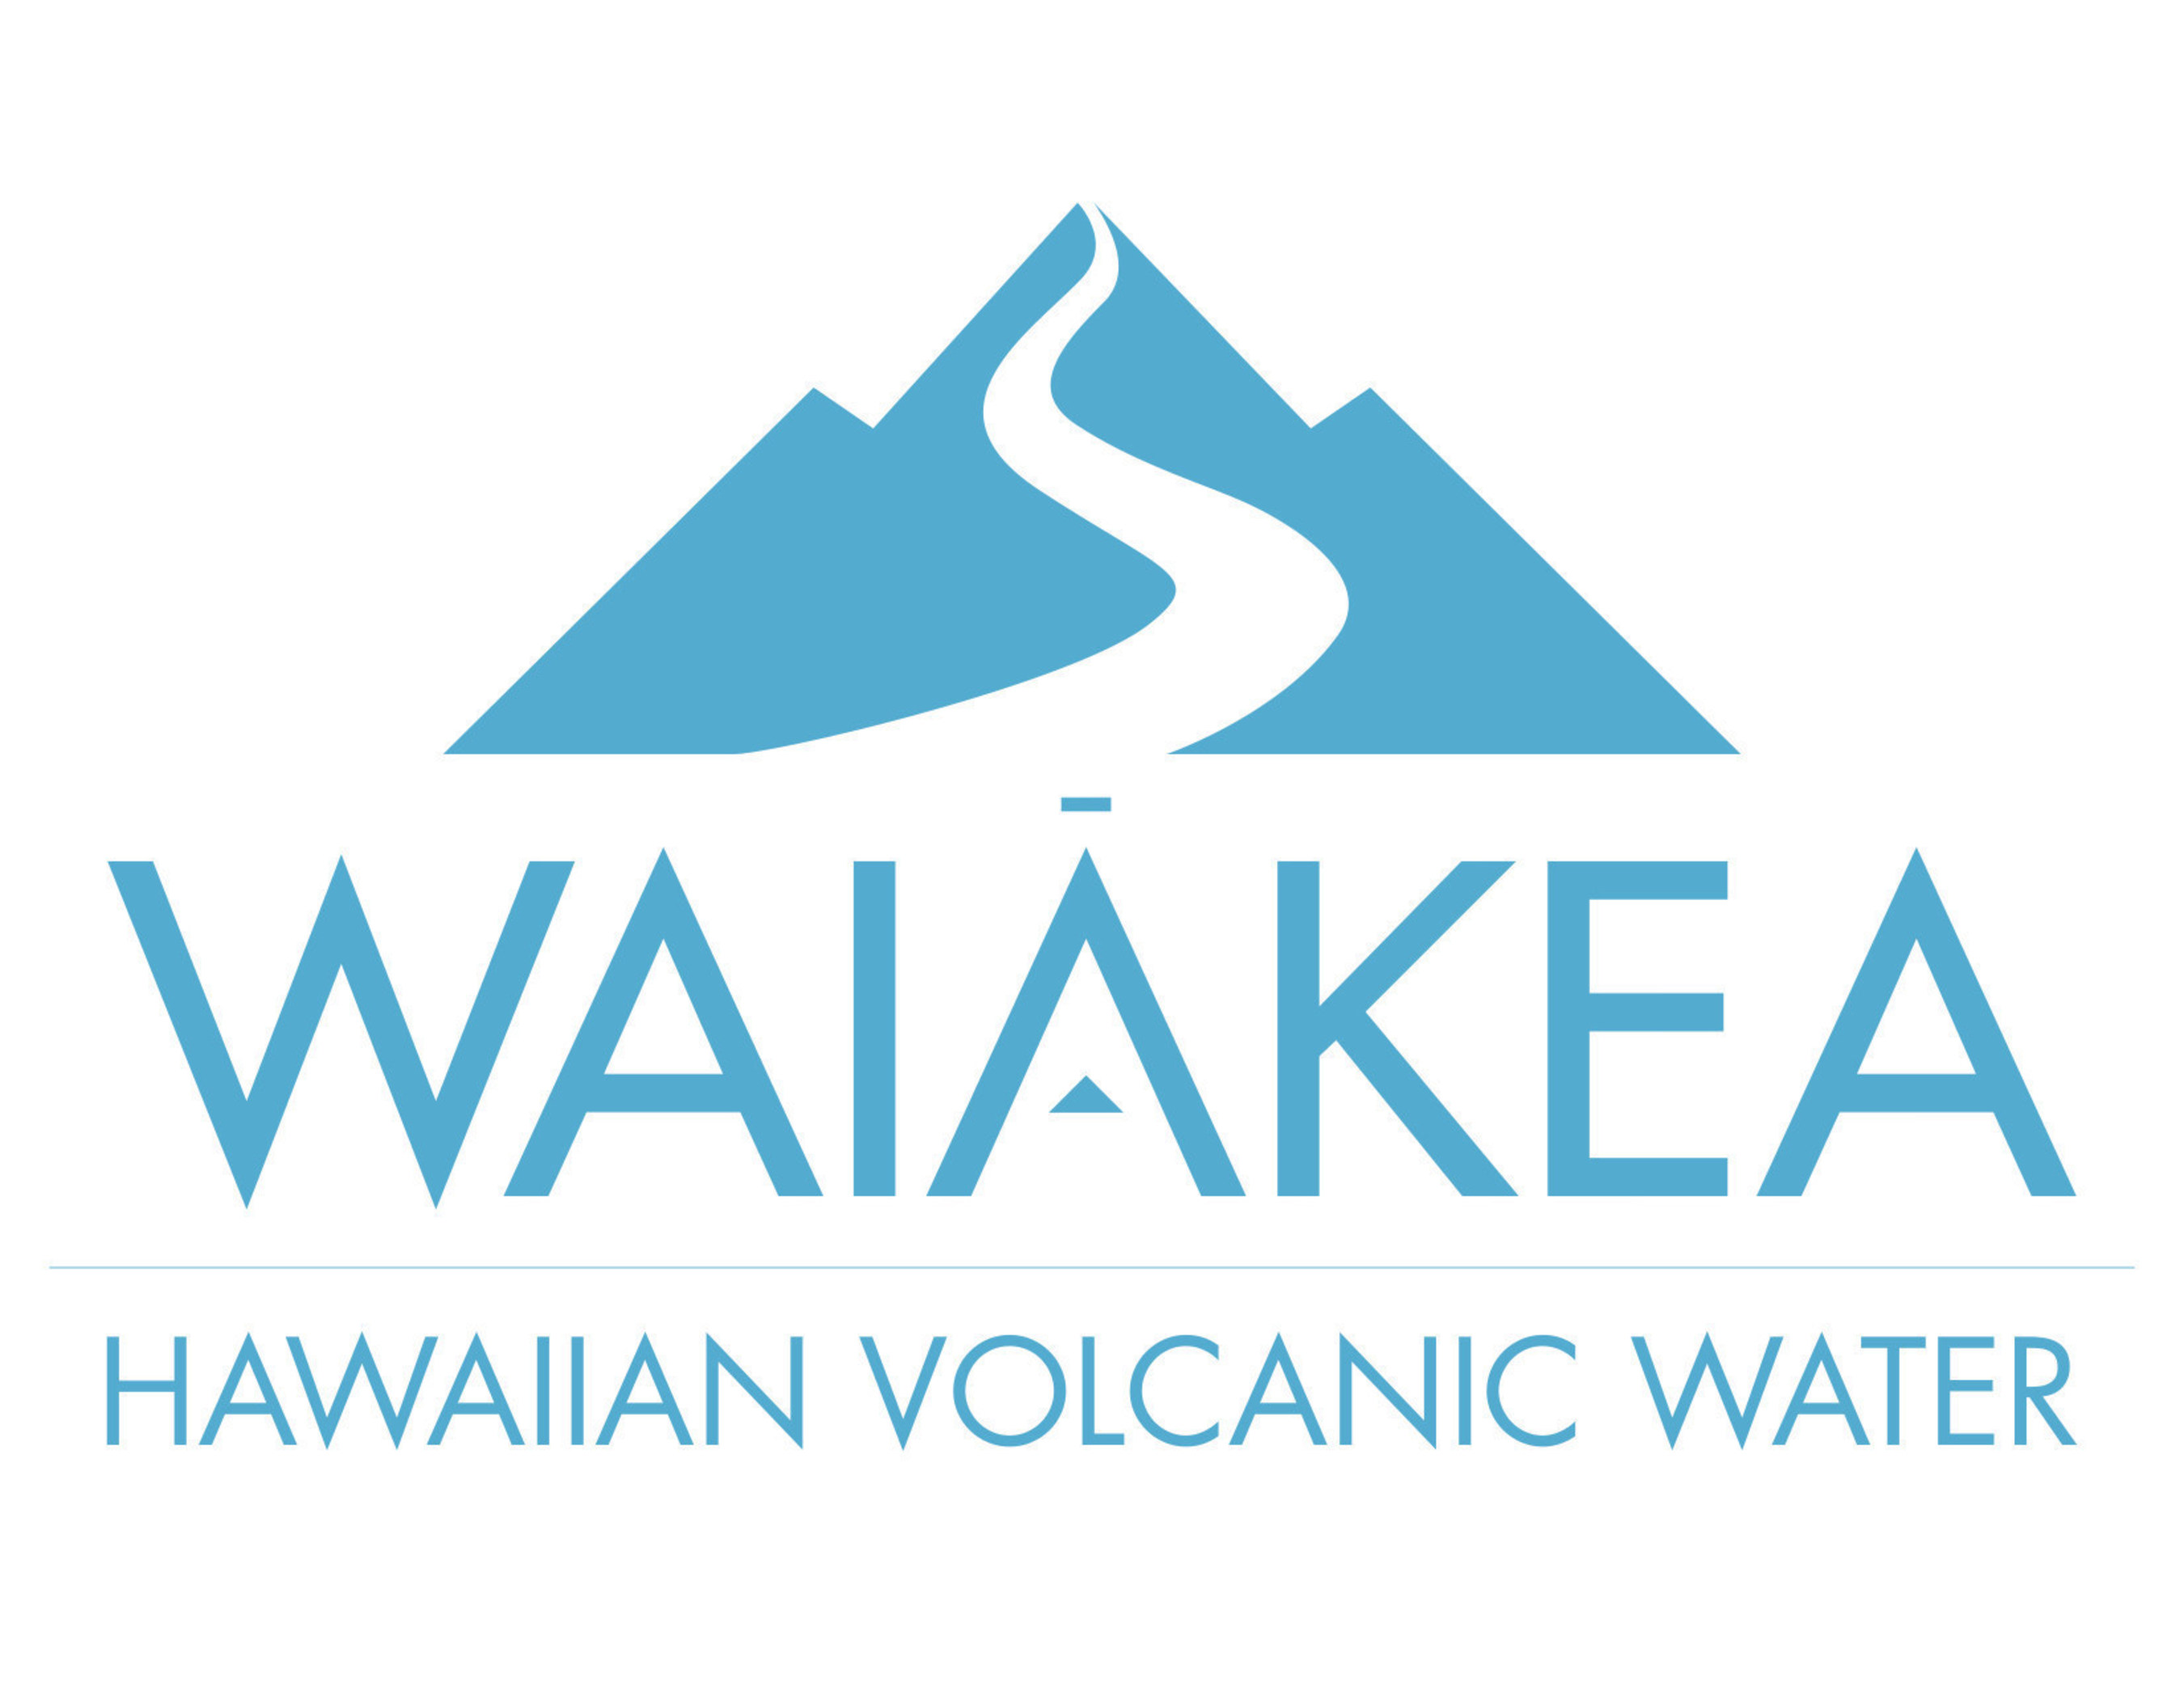 Waiakea Hawaiian Volcanic Water